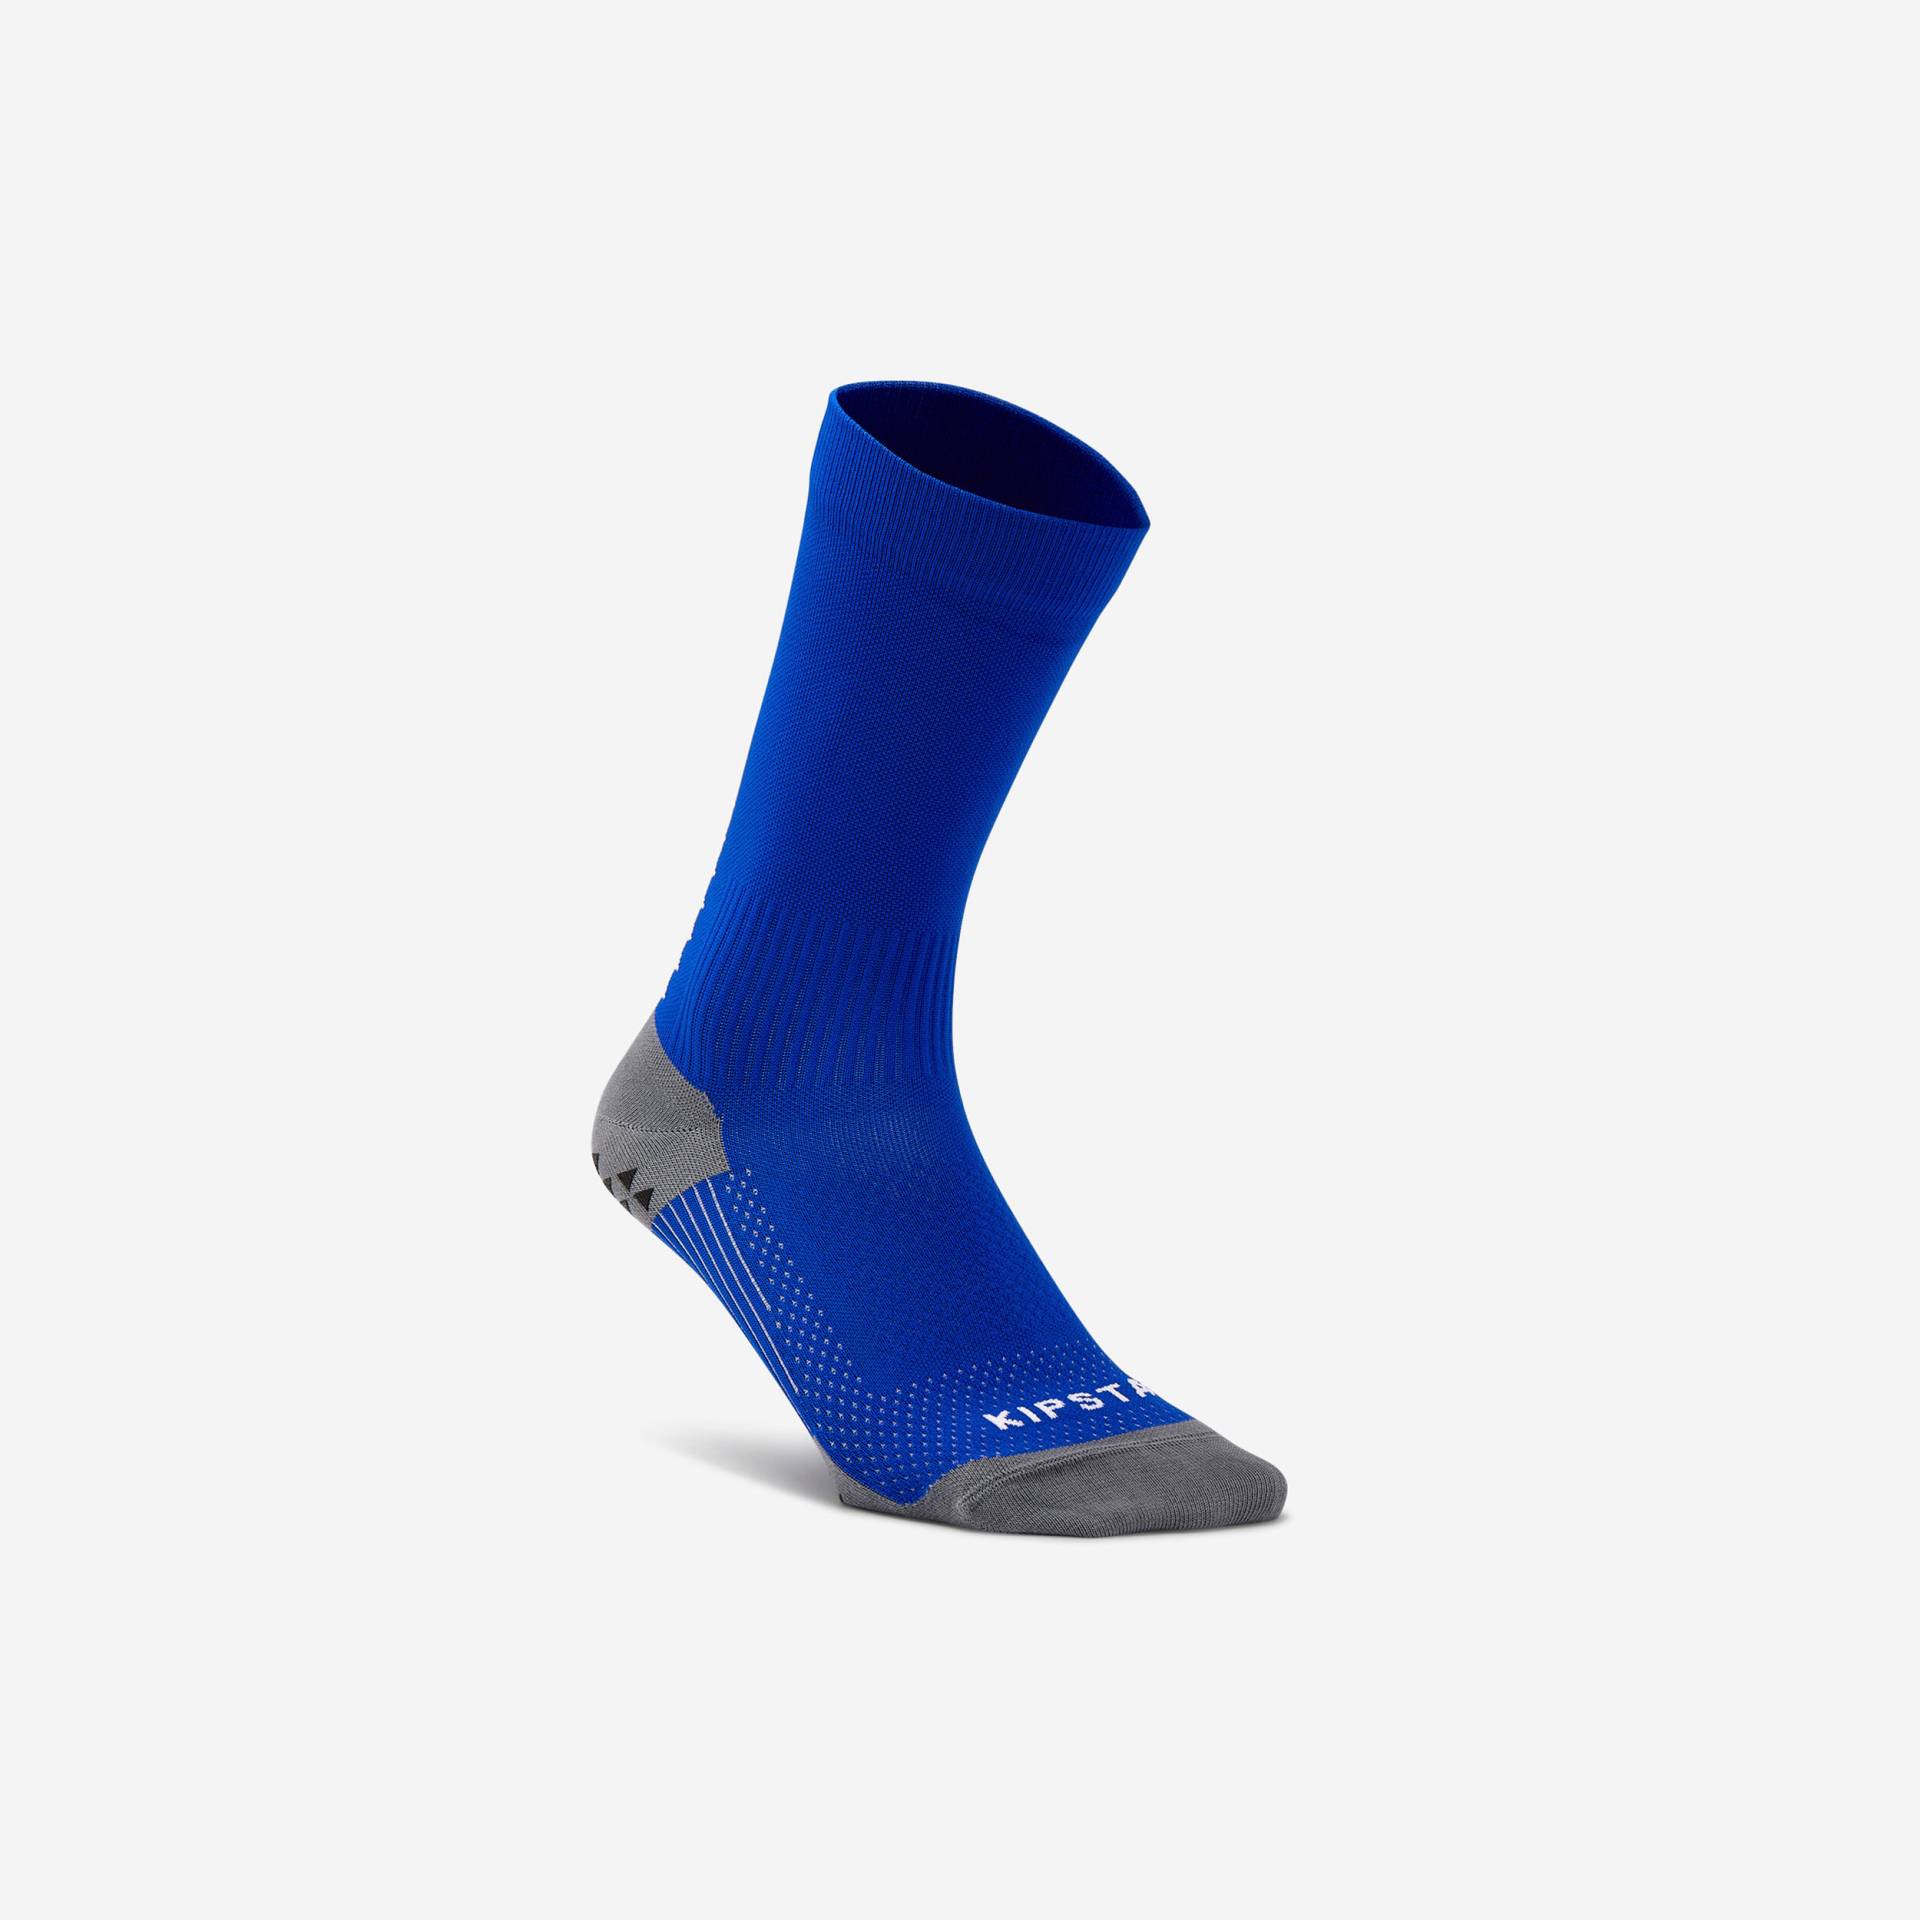 Damen/Herren Fussball Socken halbhoch rutschfest - Viralto II Mid blau von KIPSTA